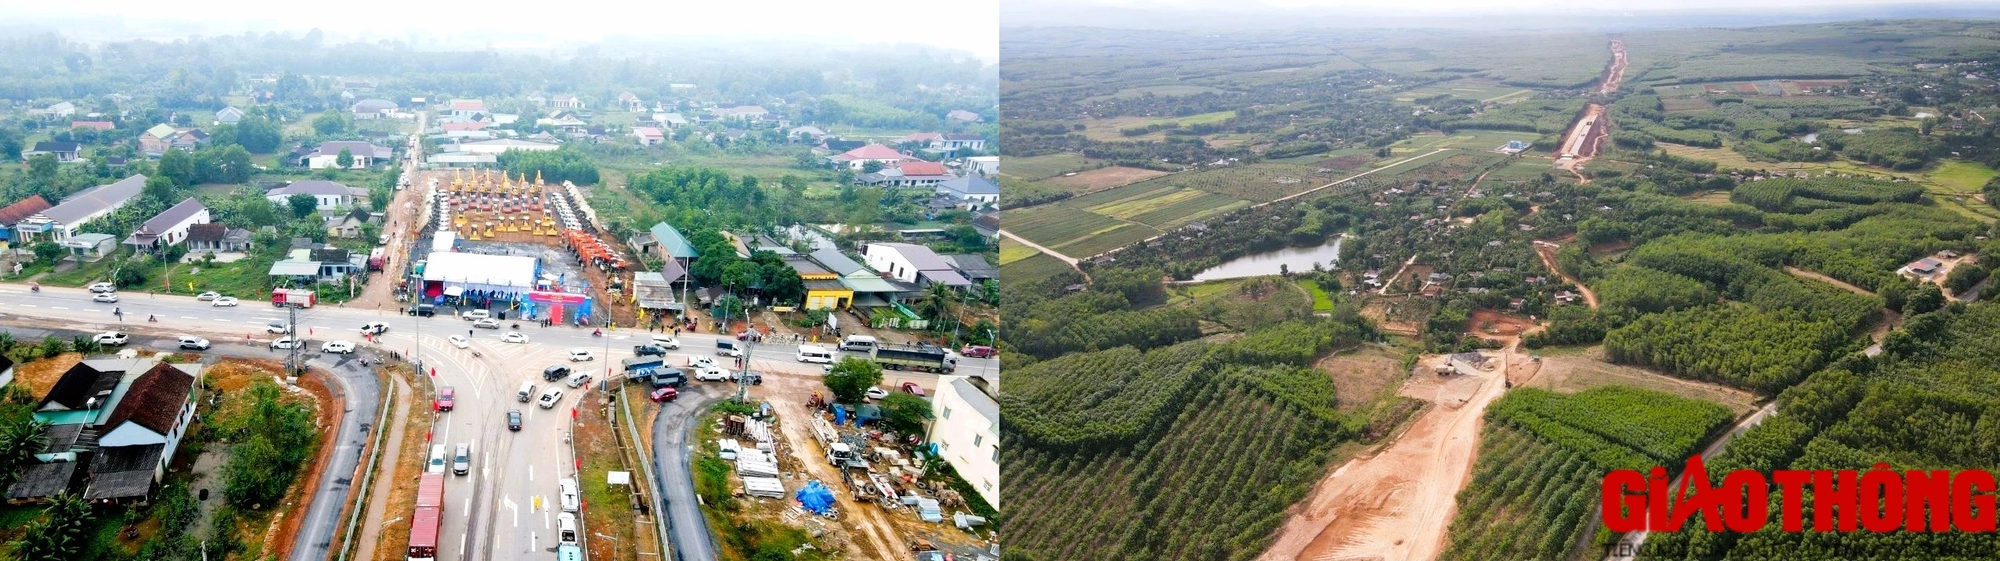 Dự án cao tốc Vạn Ninh - Cam Lộ hoàn thiện hơn 22km nền đường, thảm nhựa 14km- Ảnh 4.